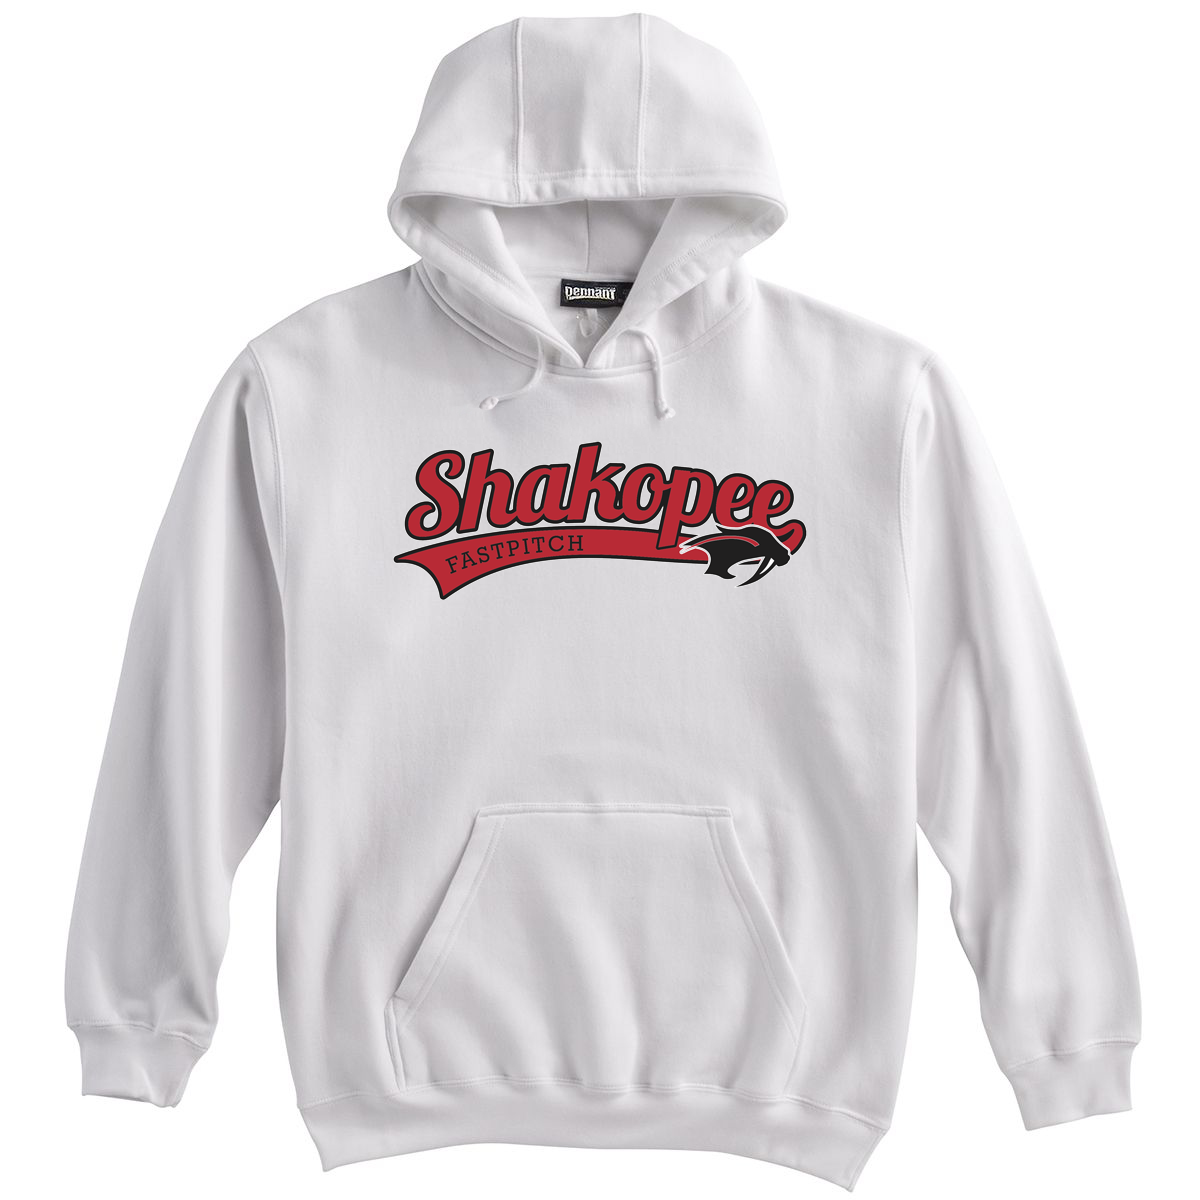 Shakopee Softball Sweatshirt